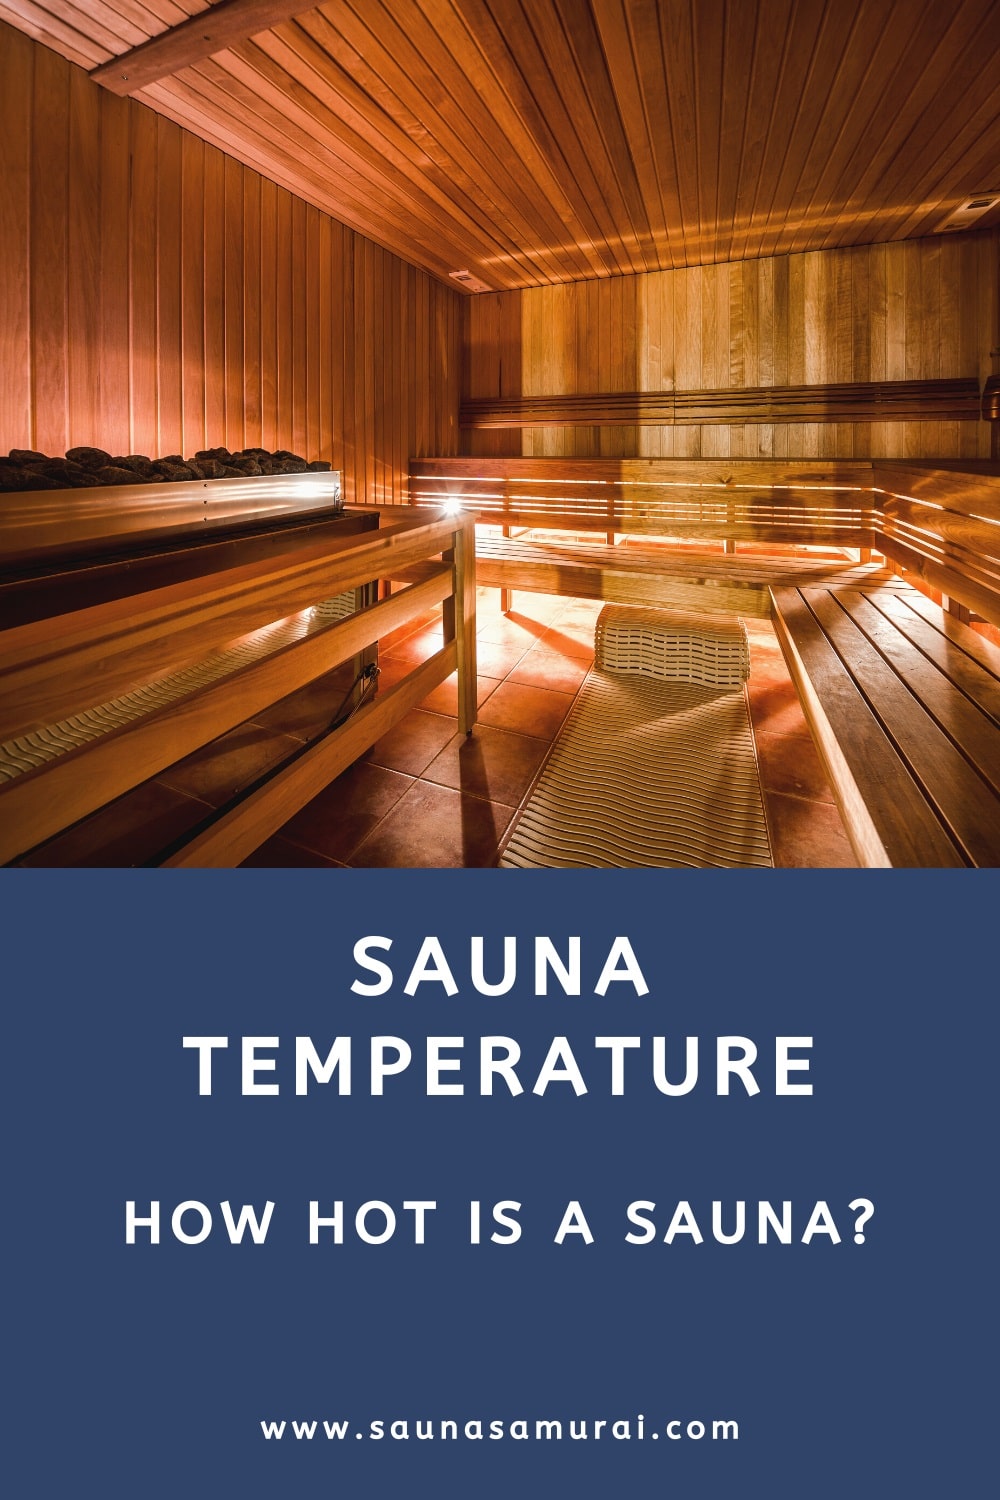 Sauna temperature (how hot is a sauna?)